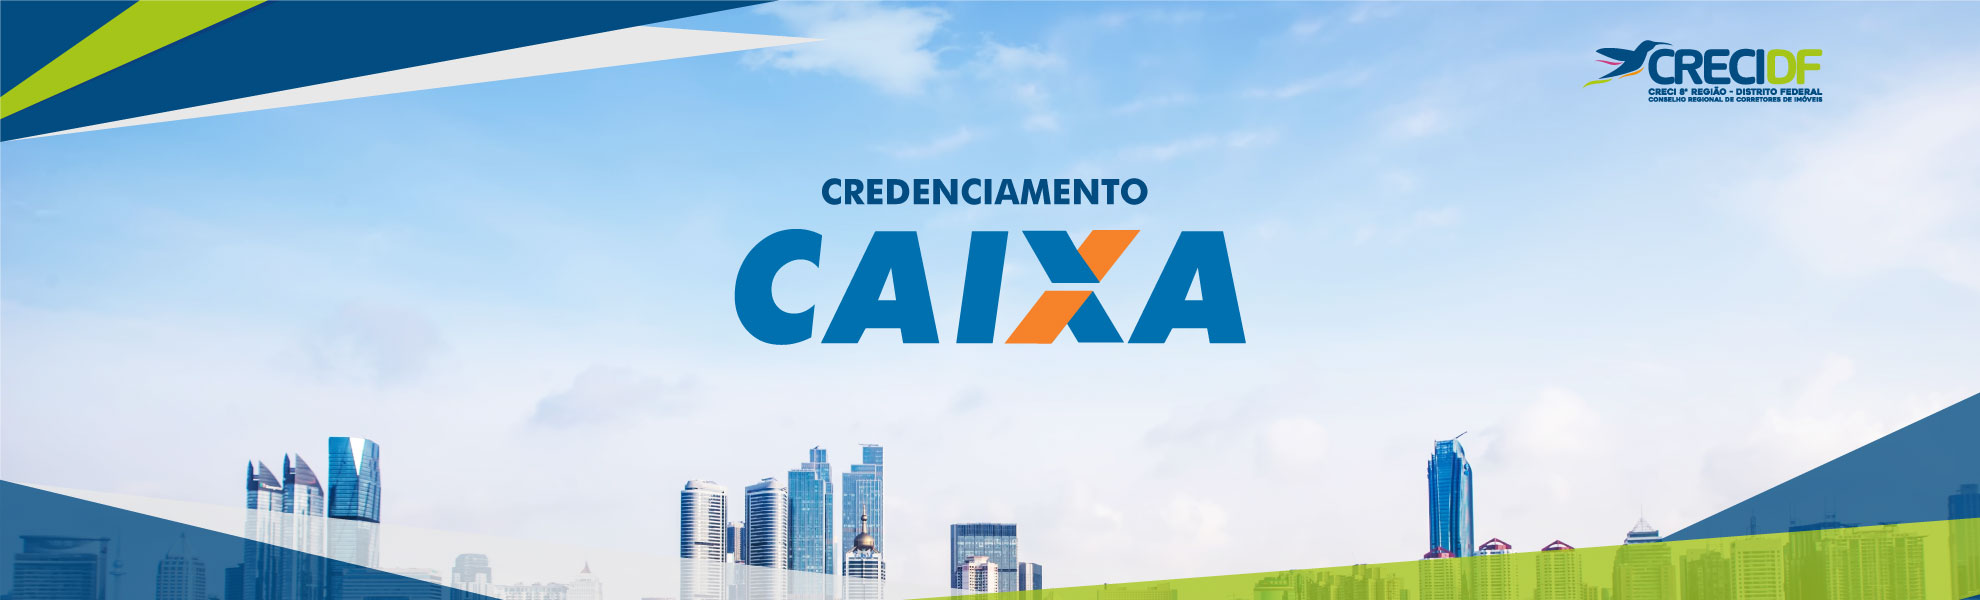 credenciamento-CAIXA-1980x600